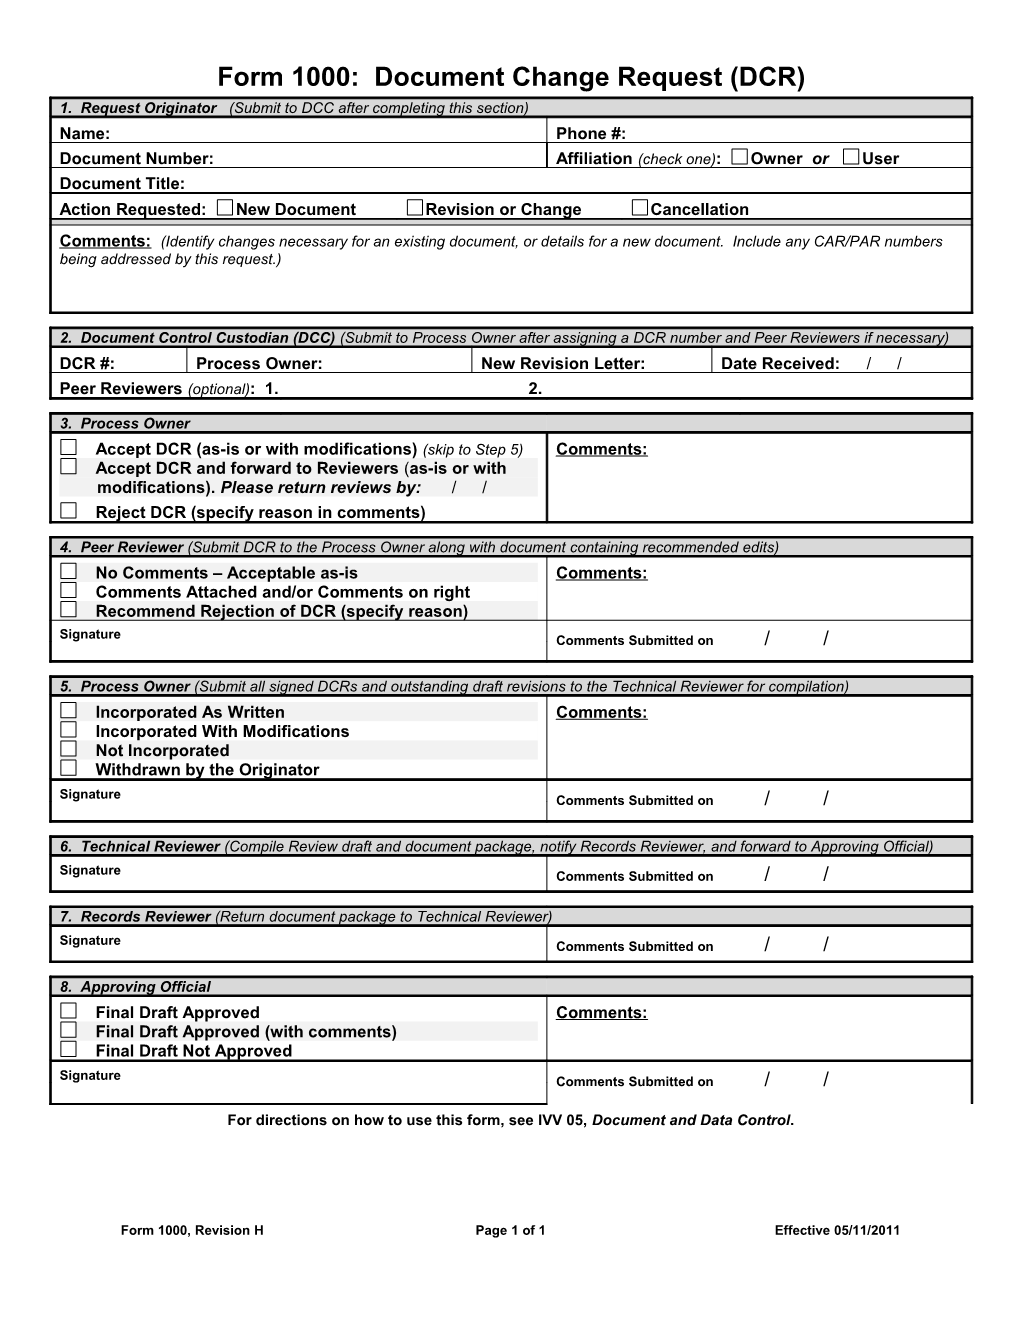 Document Change Request (DCR) IMS Form 1000